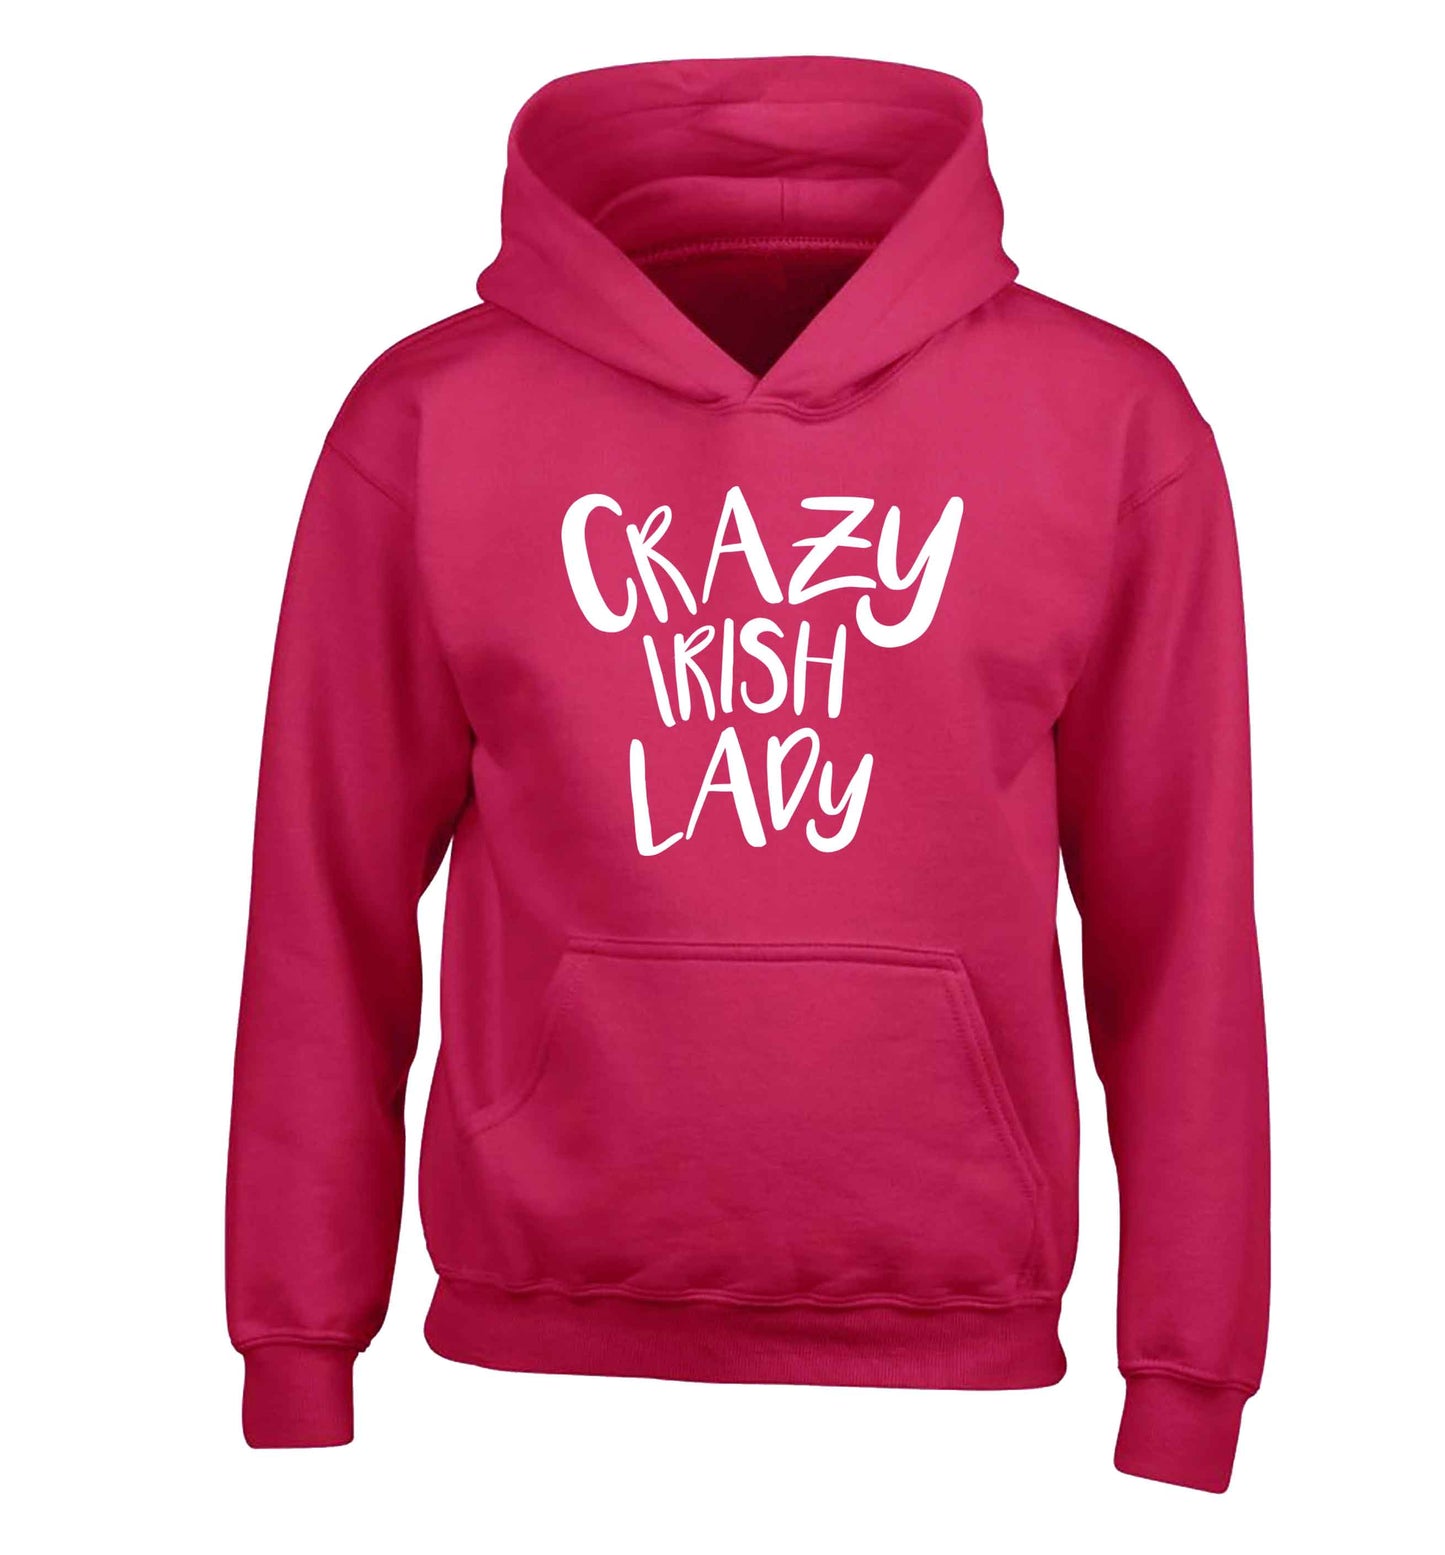 Crazy Irish lady children's pink hoodie 12-13 Years